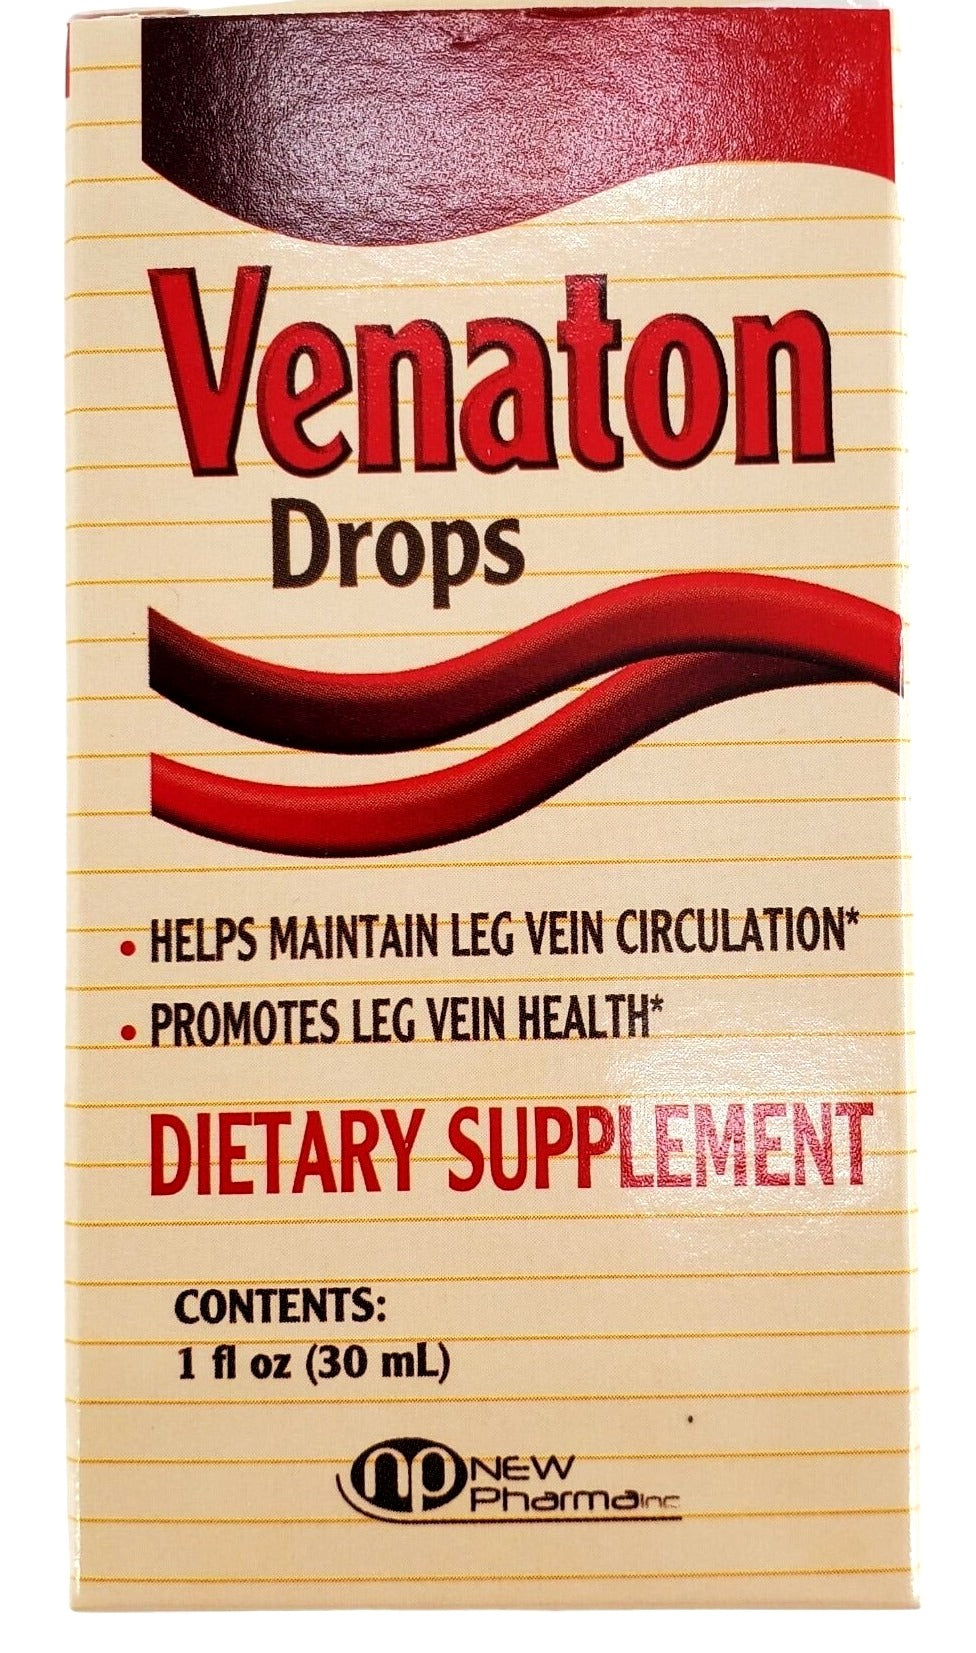 Venaton Drops Leg vein health supplement with plastic dropper 1 oz bottle